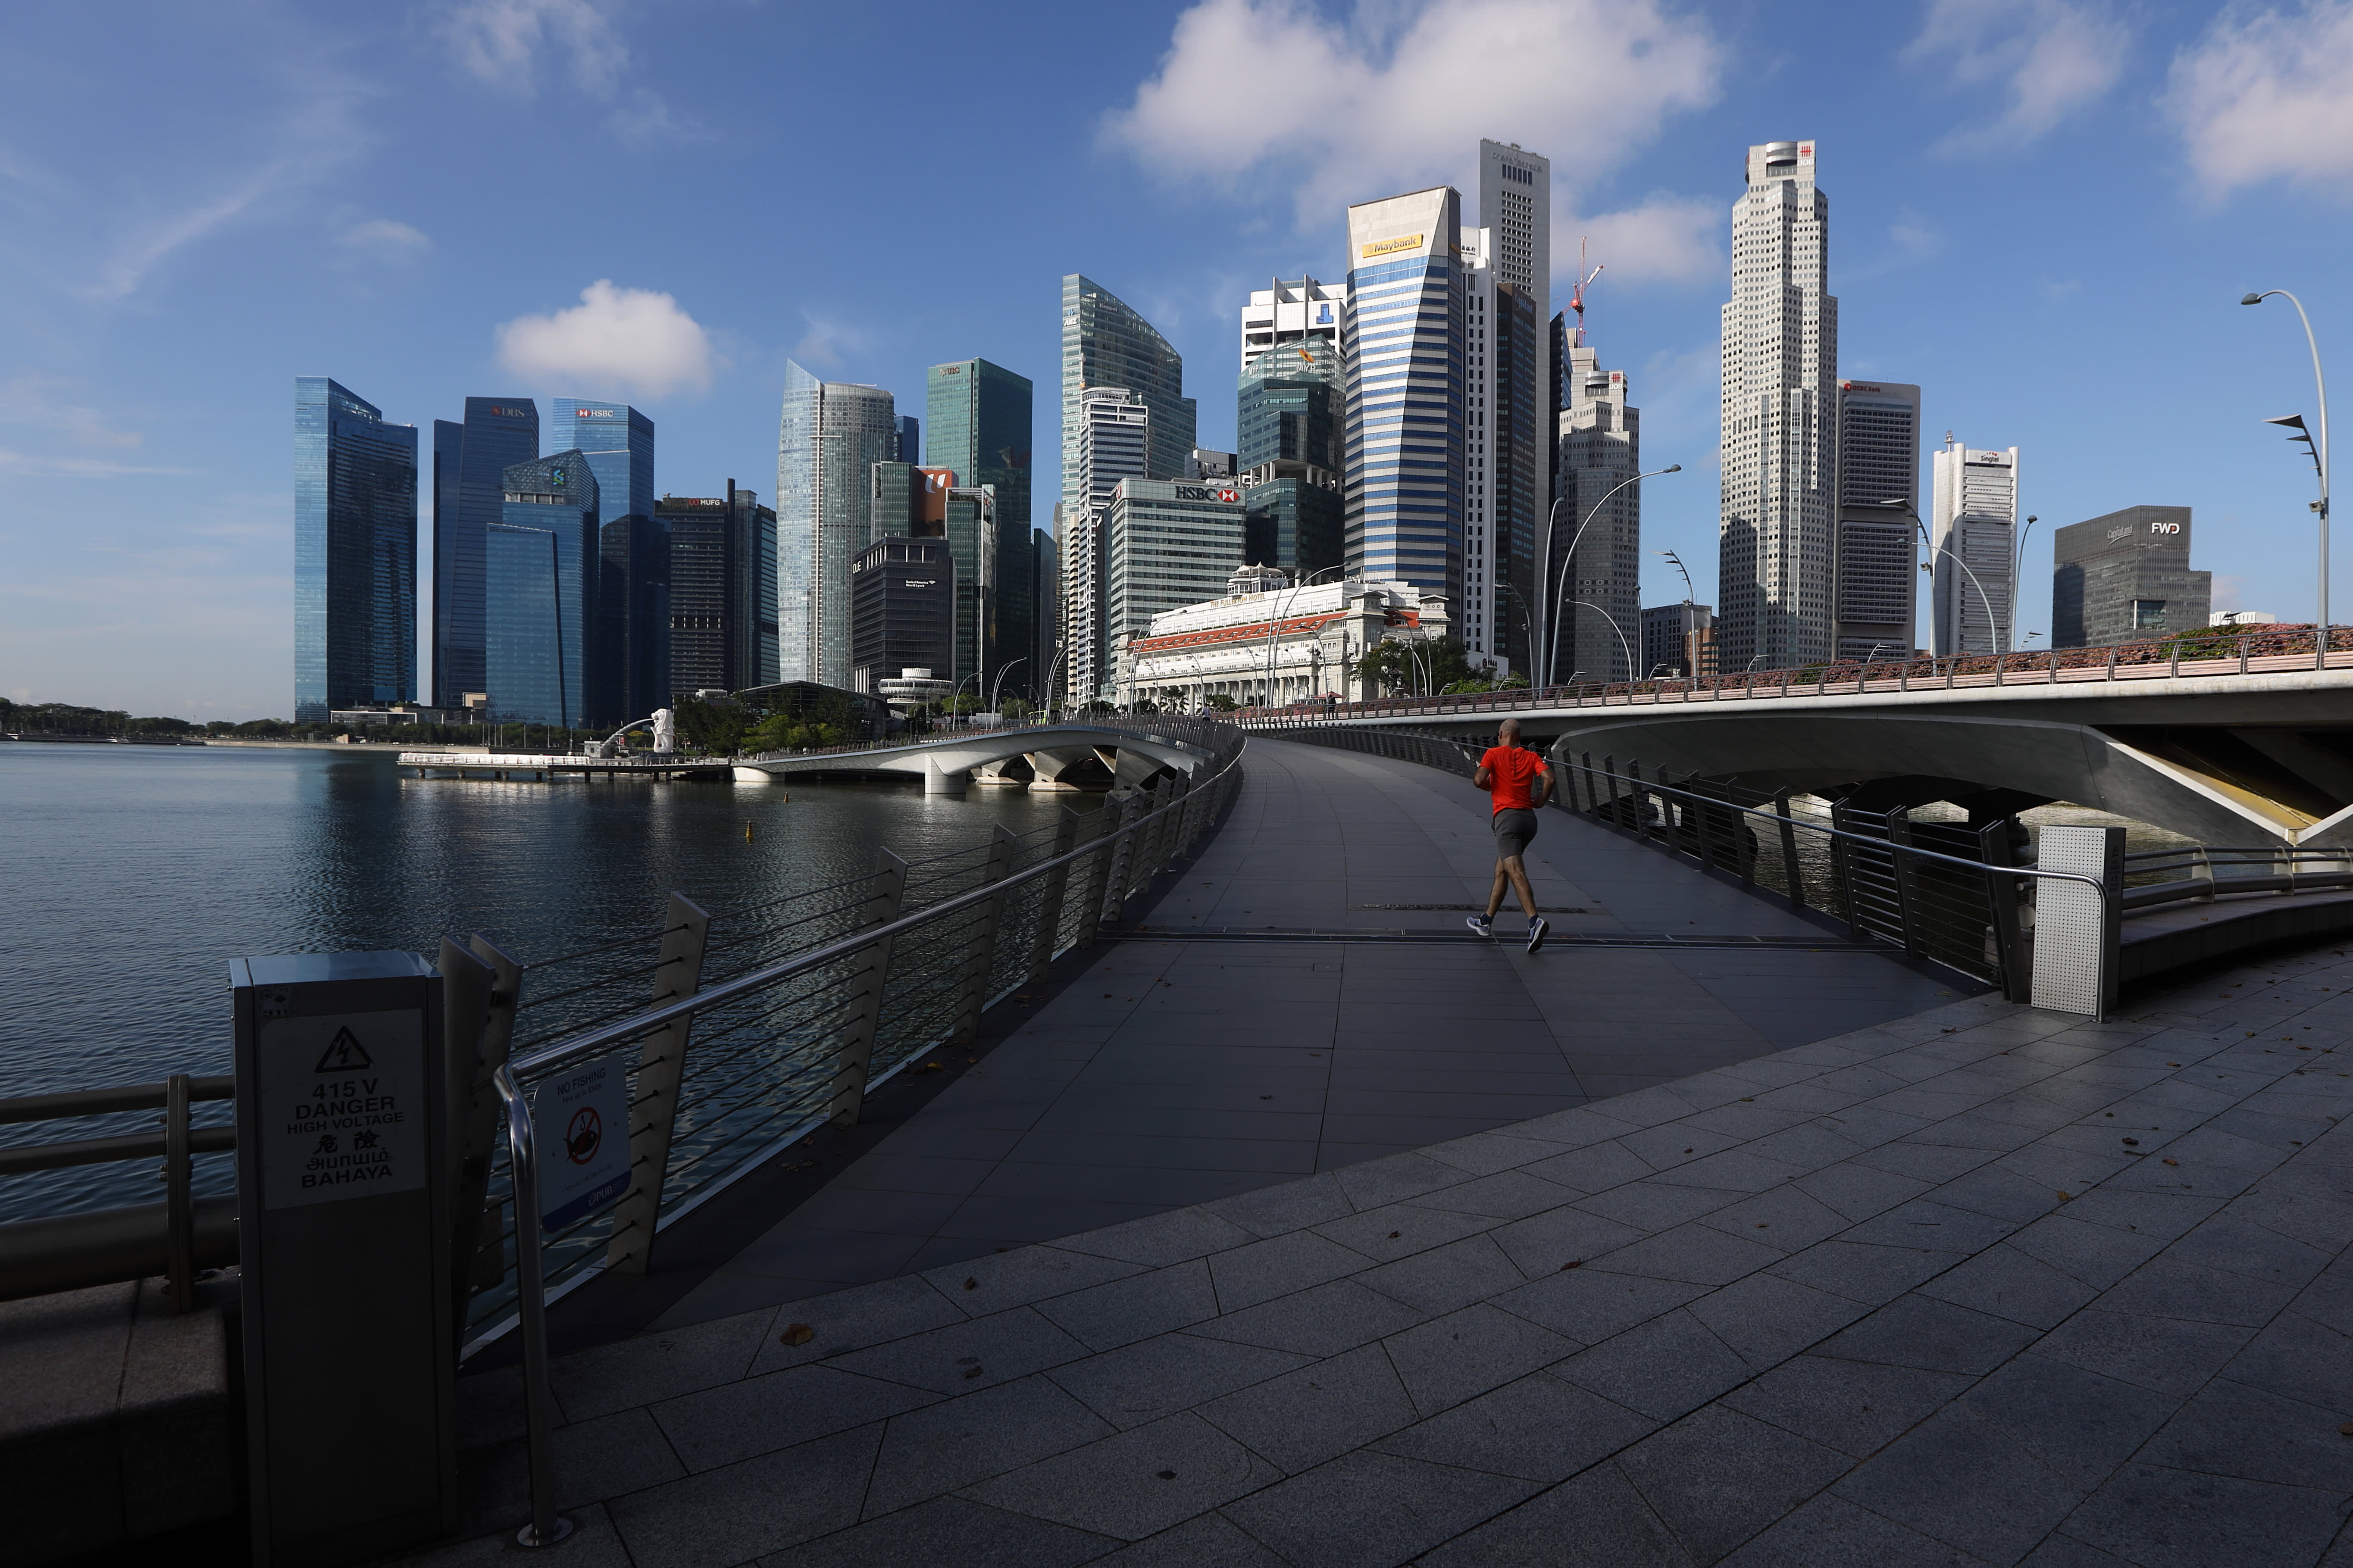 Singapore releases Q3 2021 GDP update, economic data